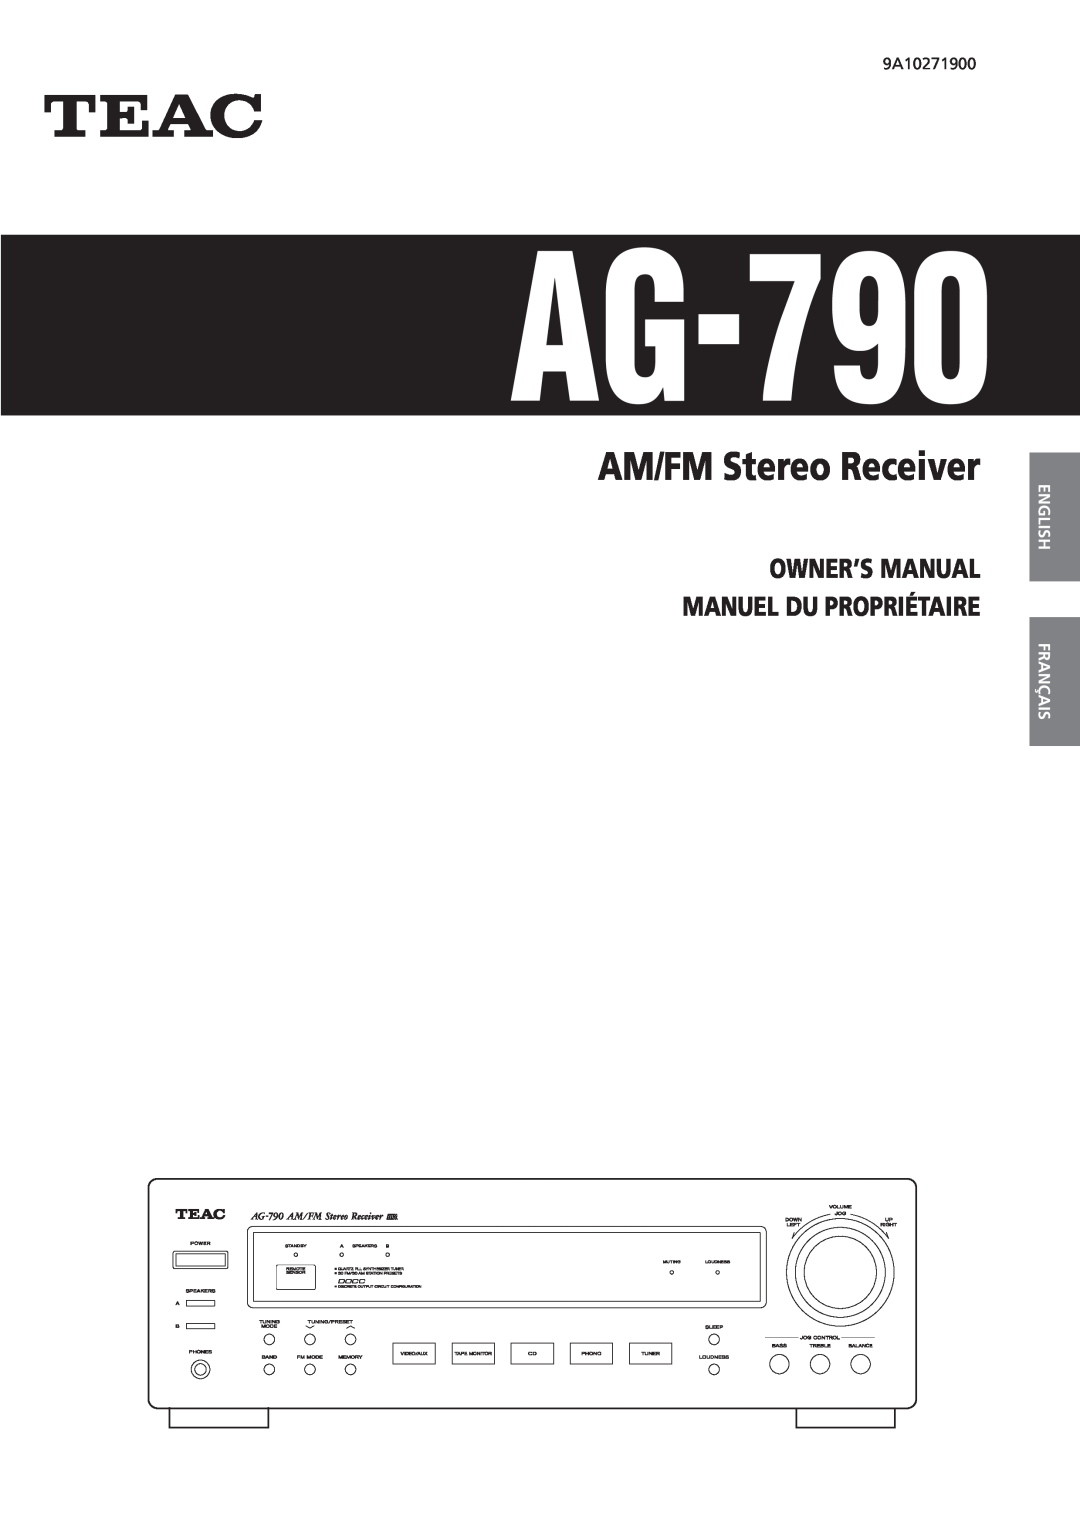 Teac AG-790 owner manual English, Français, AM/FM Stereo Receiver 